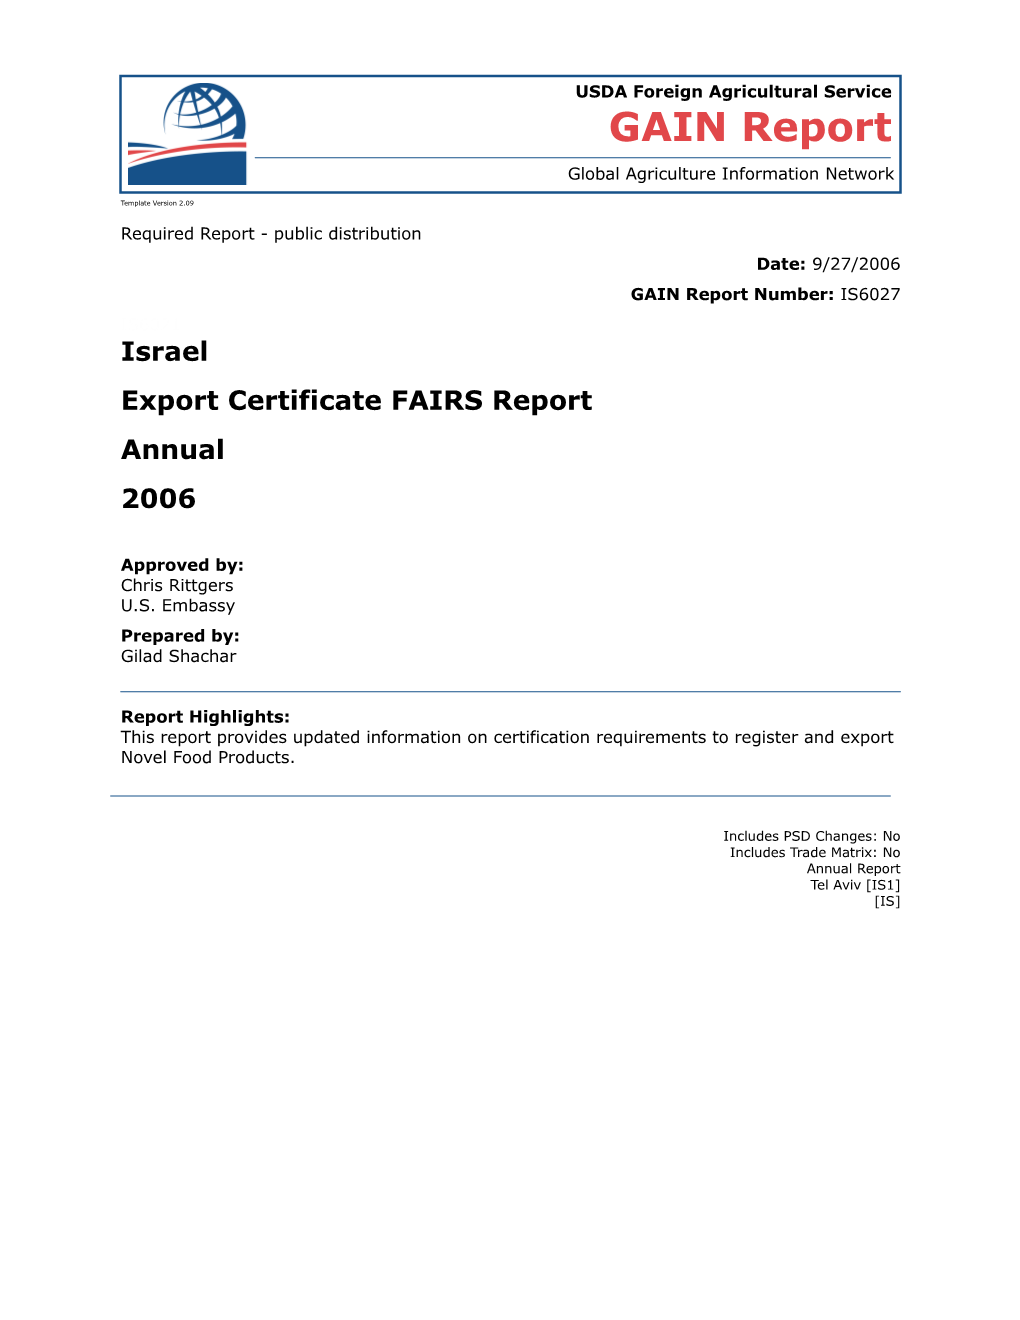 Export Certificate Report 2006